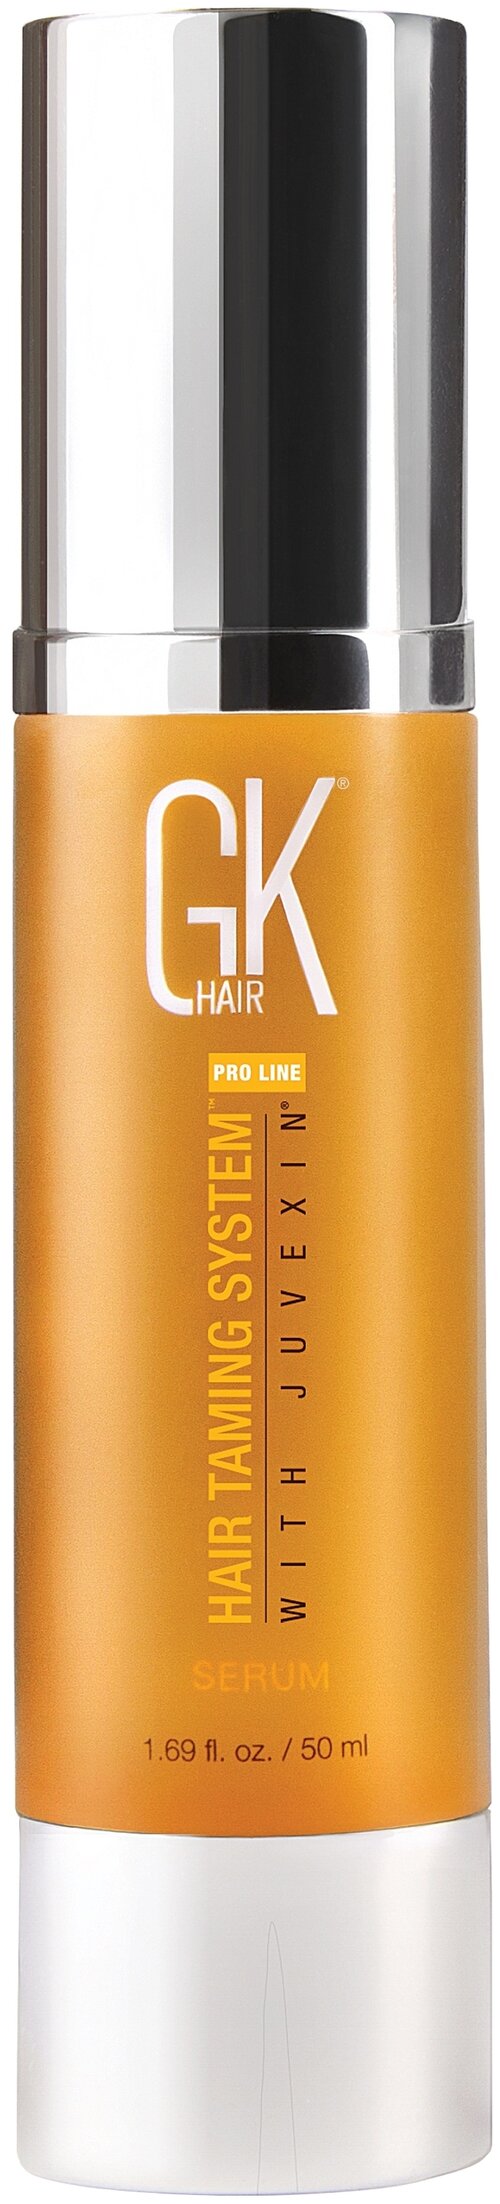 GKhair Serum Сыворотка для волос с аргановым маслом, 50 г, 50 мл, бутылка